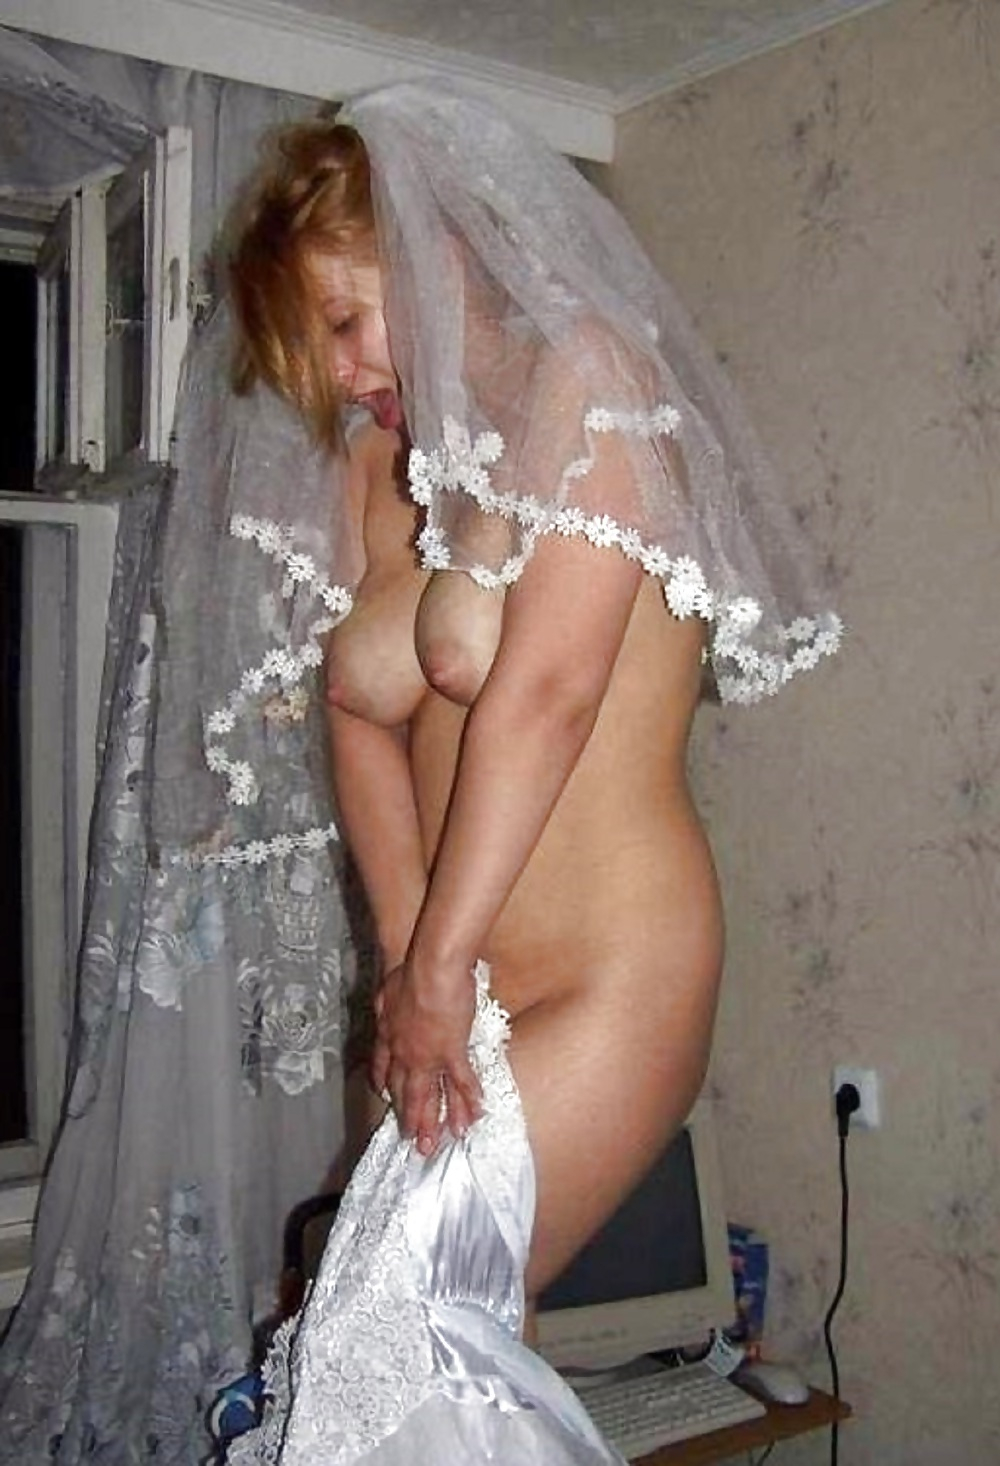 Ебля невесты на свадьбе скрытая камера. Смотреть ебля невесты на свадьбе скрытая камера онлайн